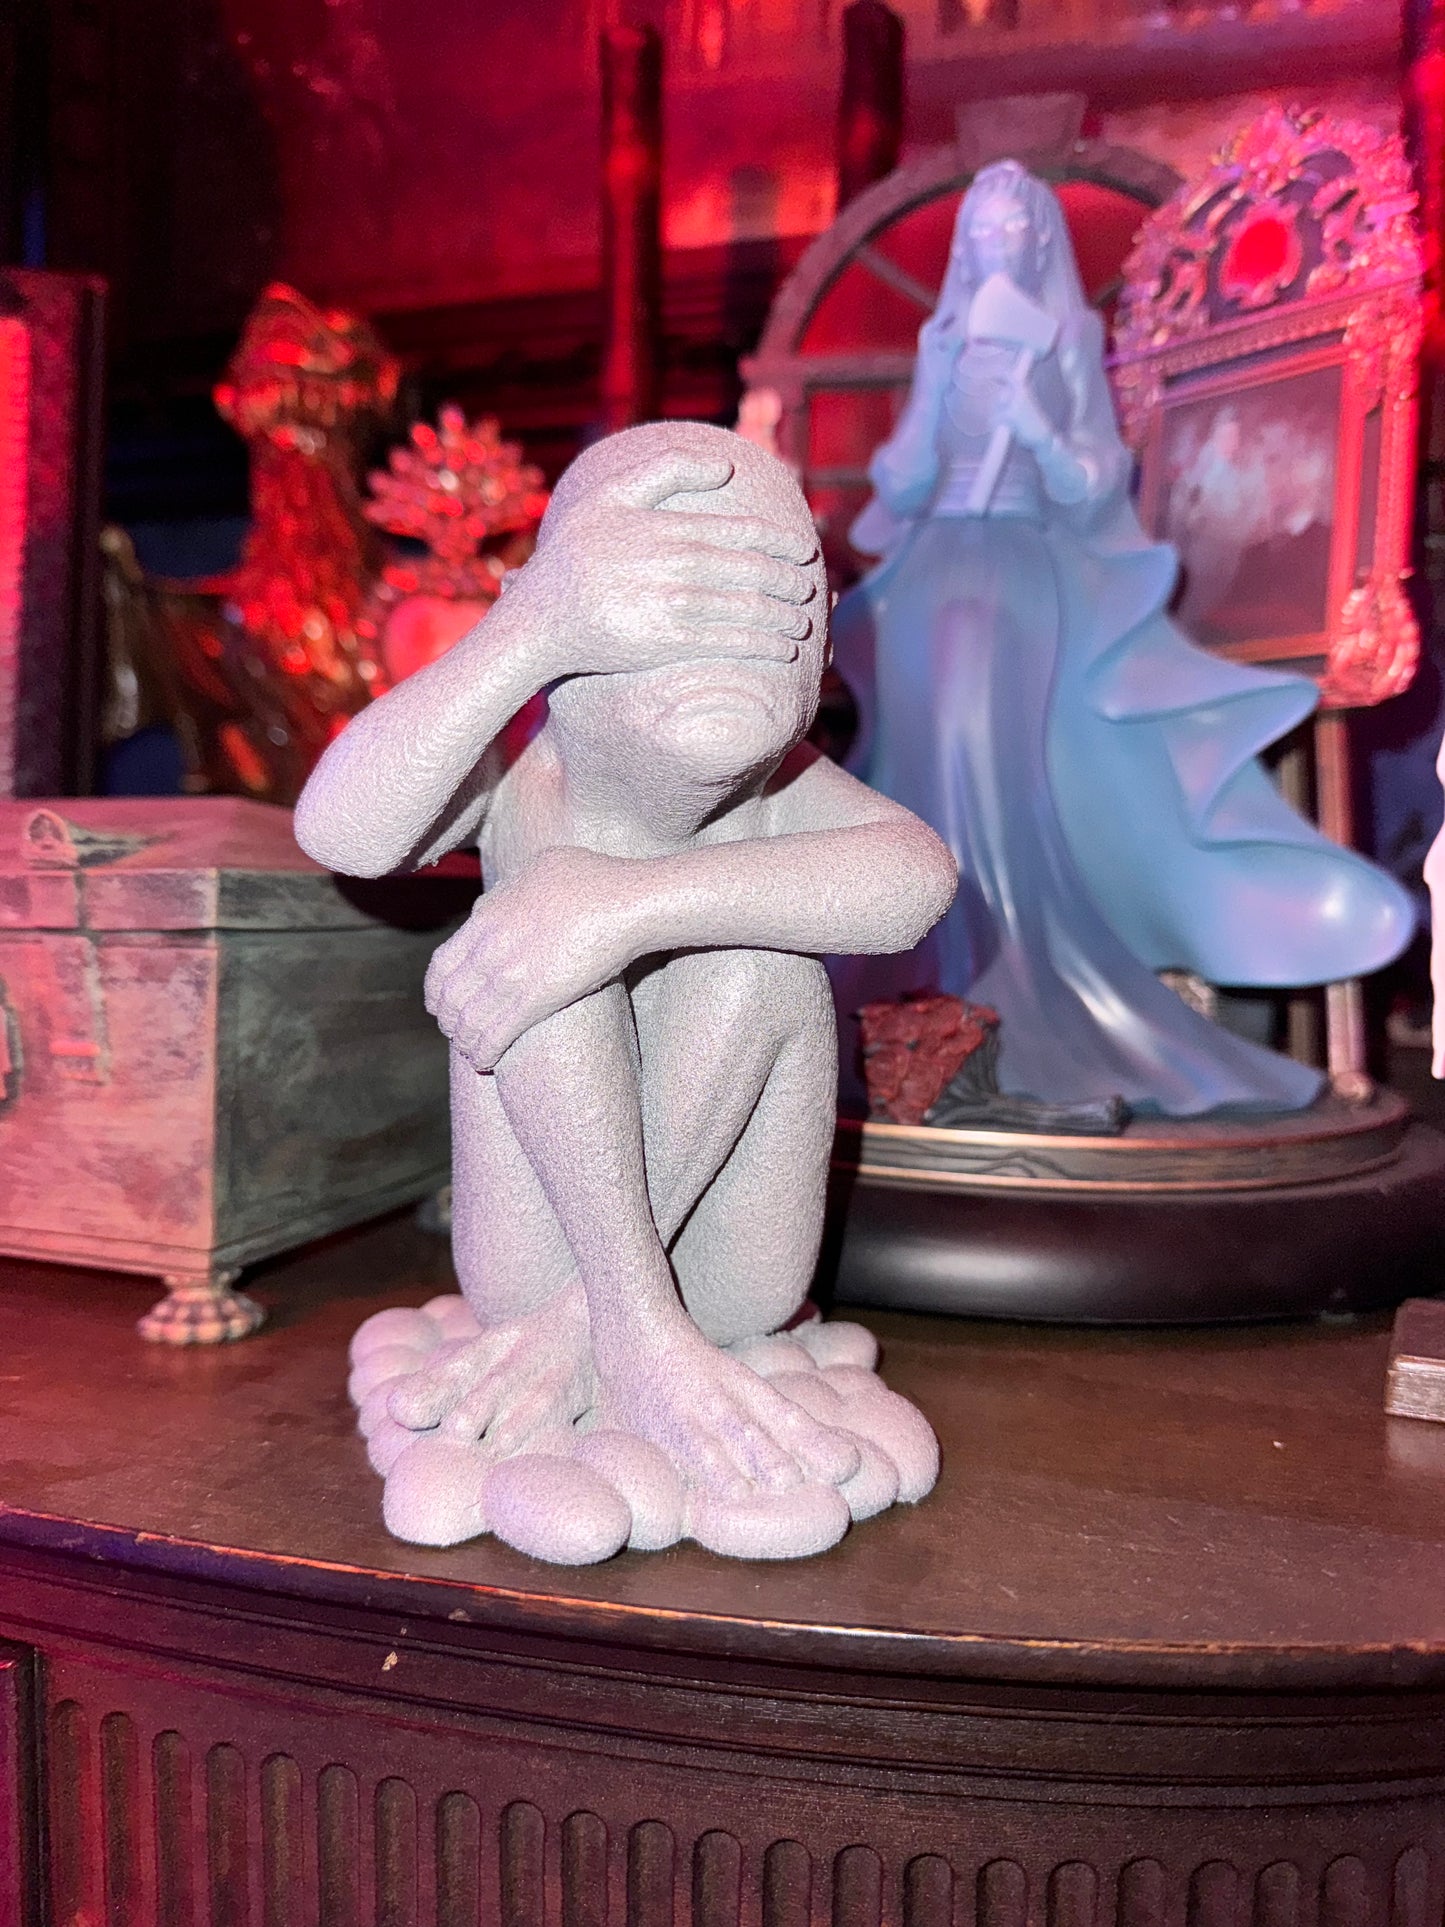 Weeping Angel figurine